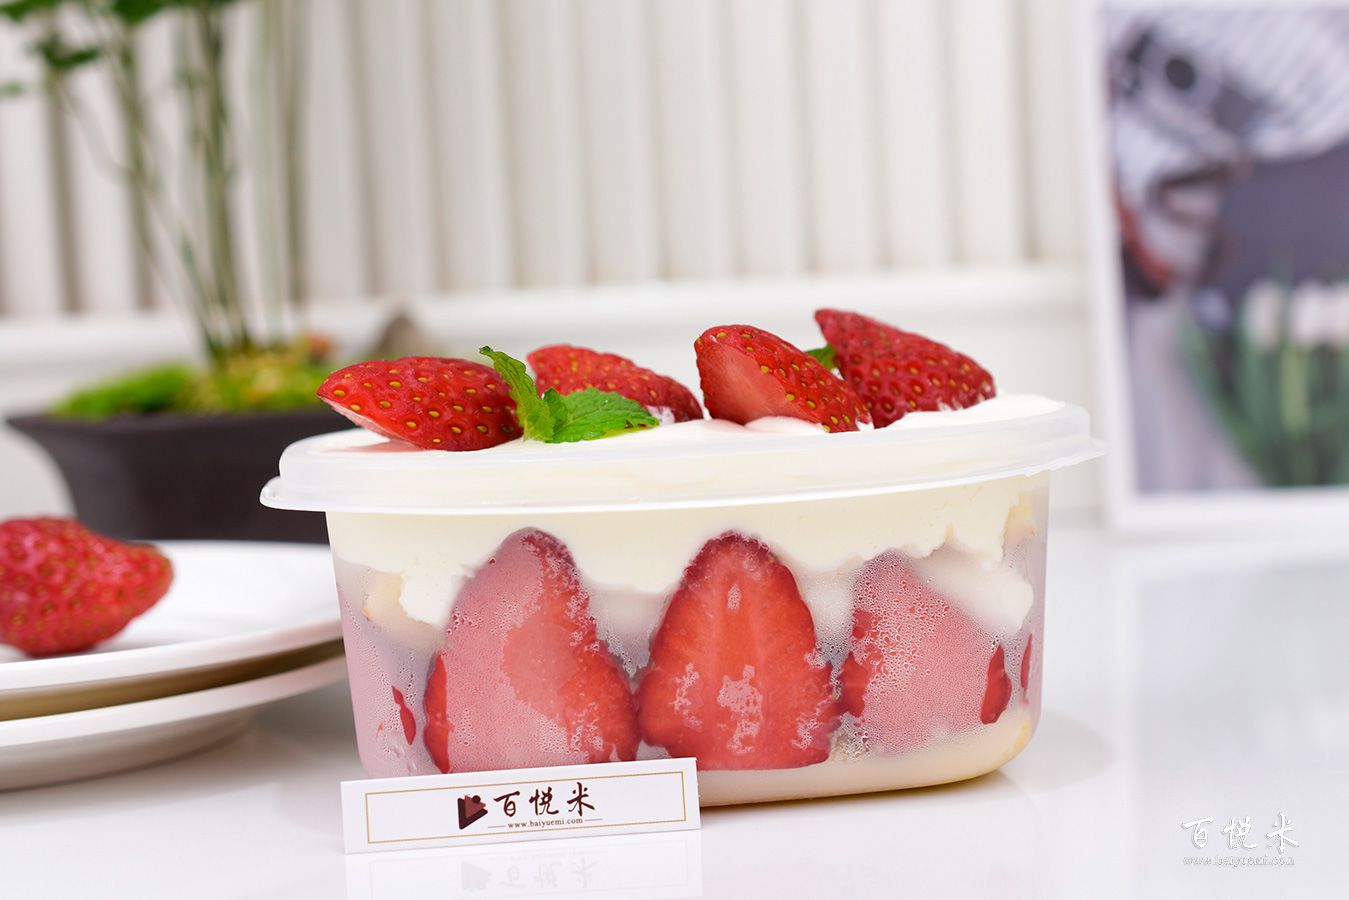 草莓盒子蛋糕高清图片大全【蛋糕图片】_百悦米西点培训